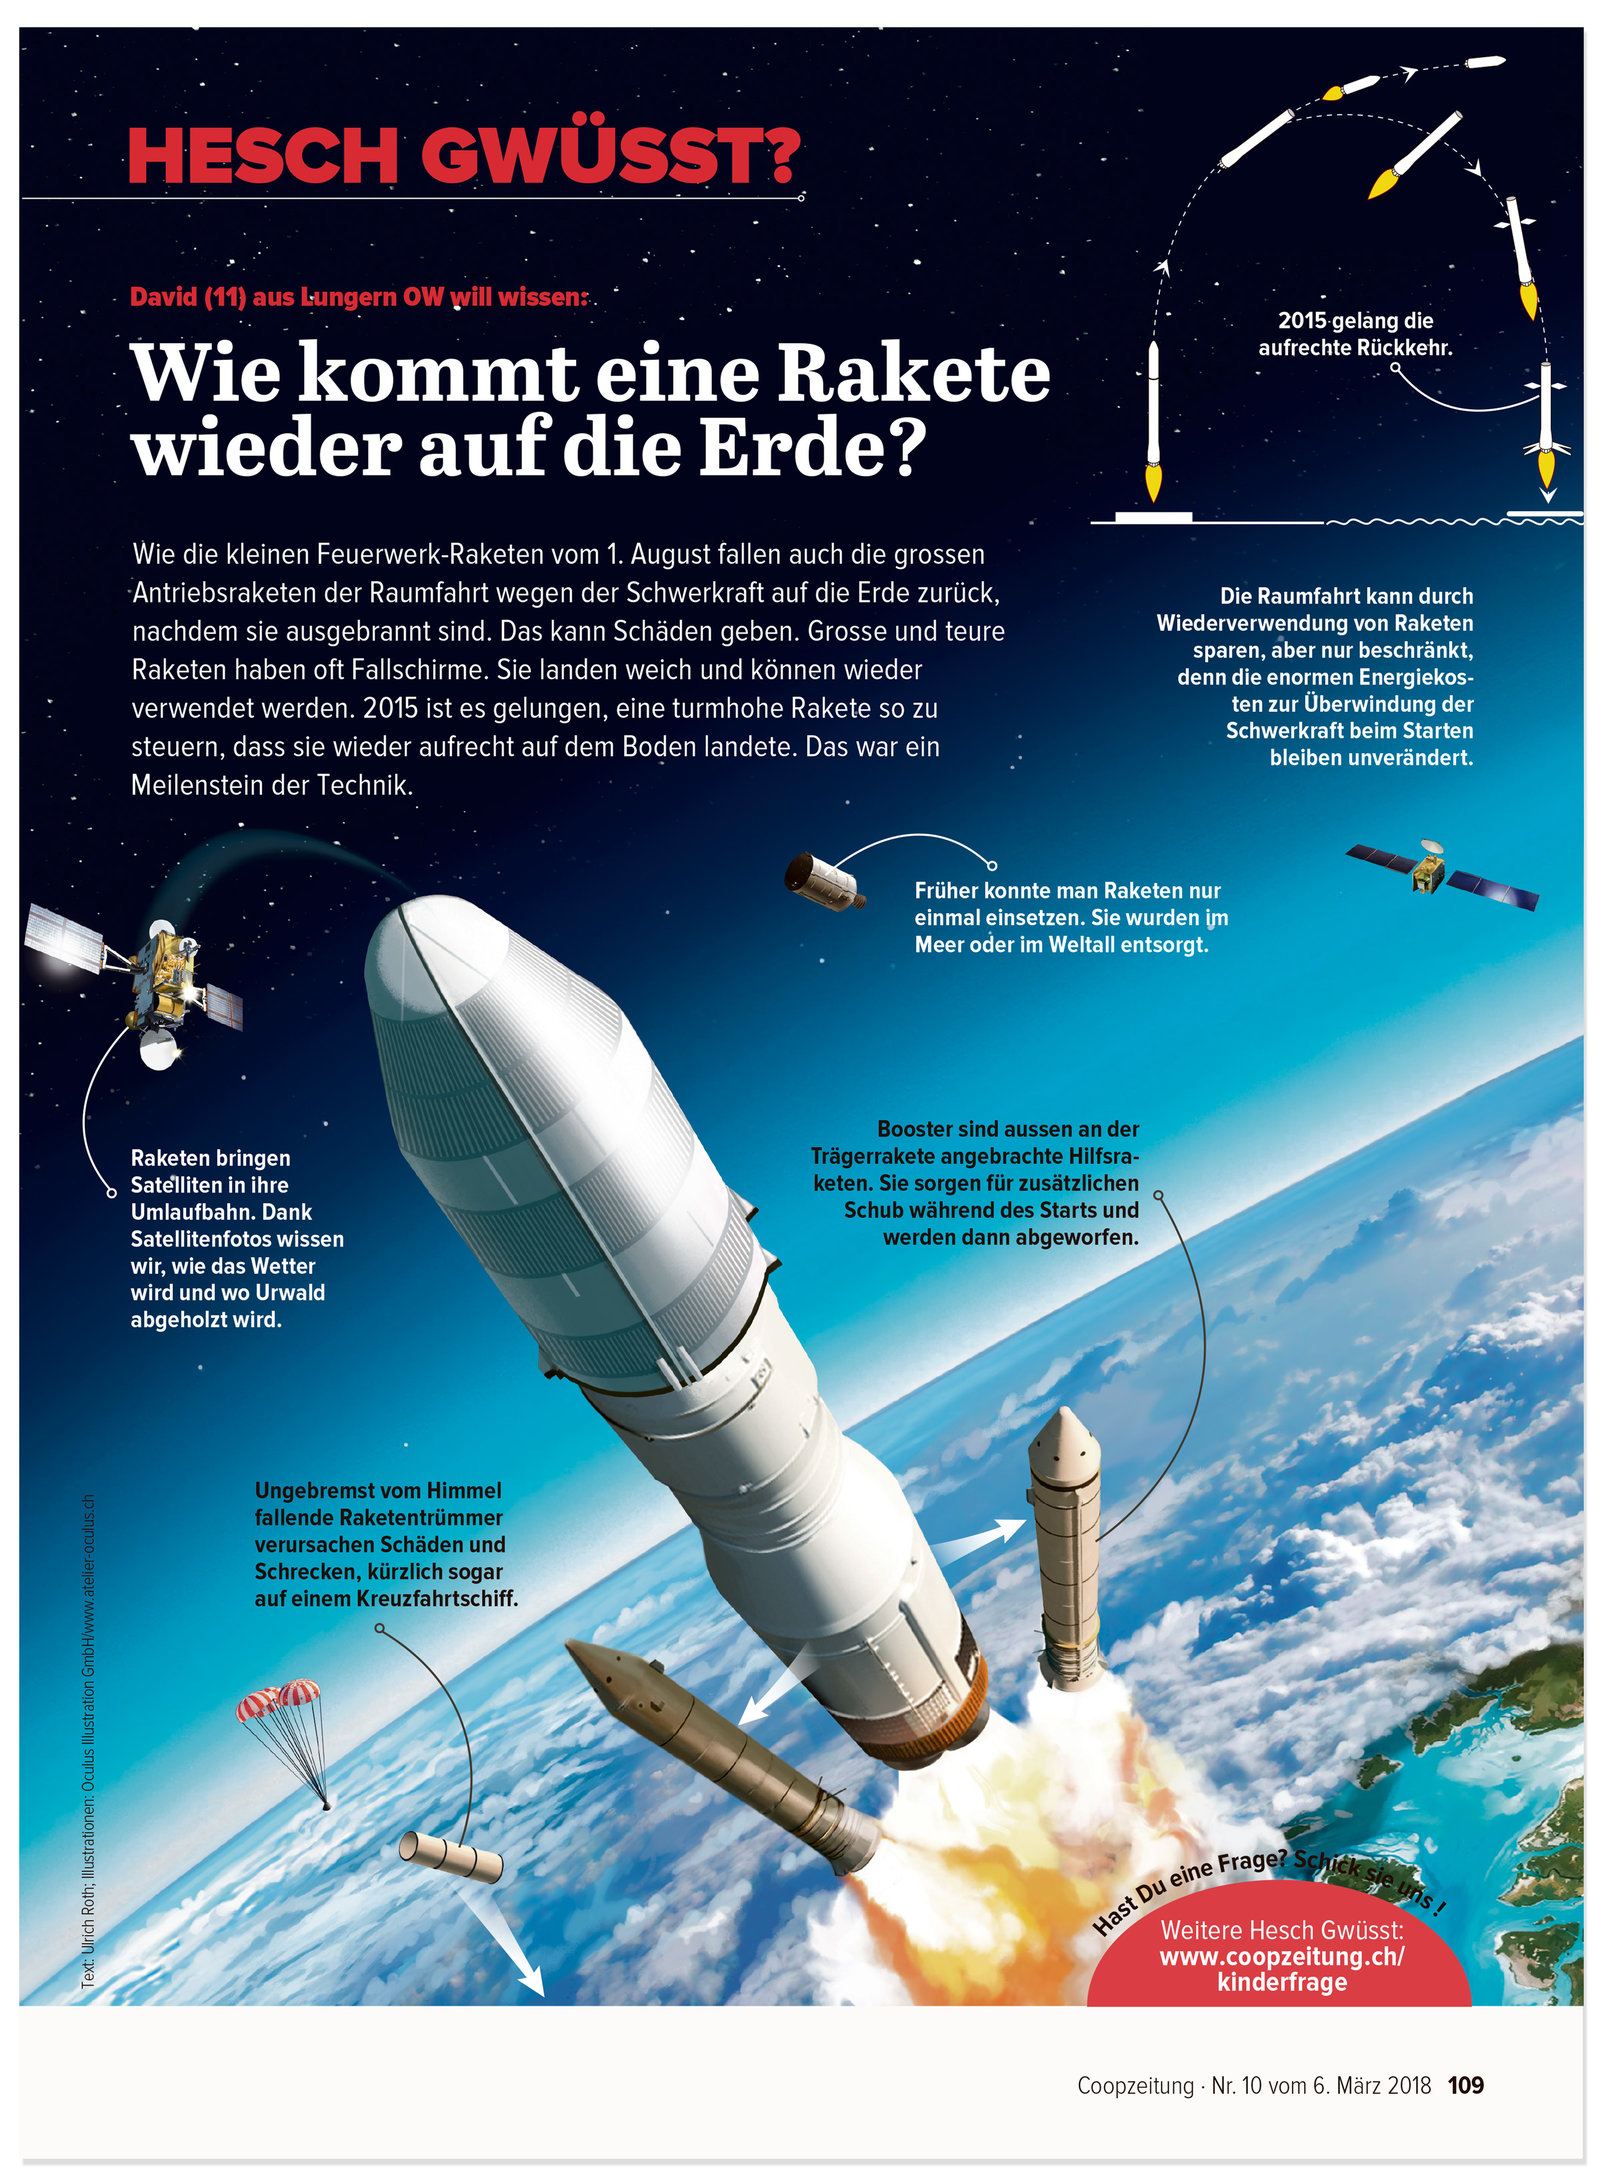 oculus-illustration-coopzeitung-hesch-gwuesst-rakete